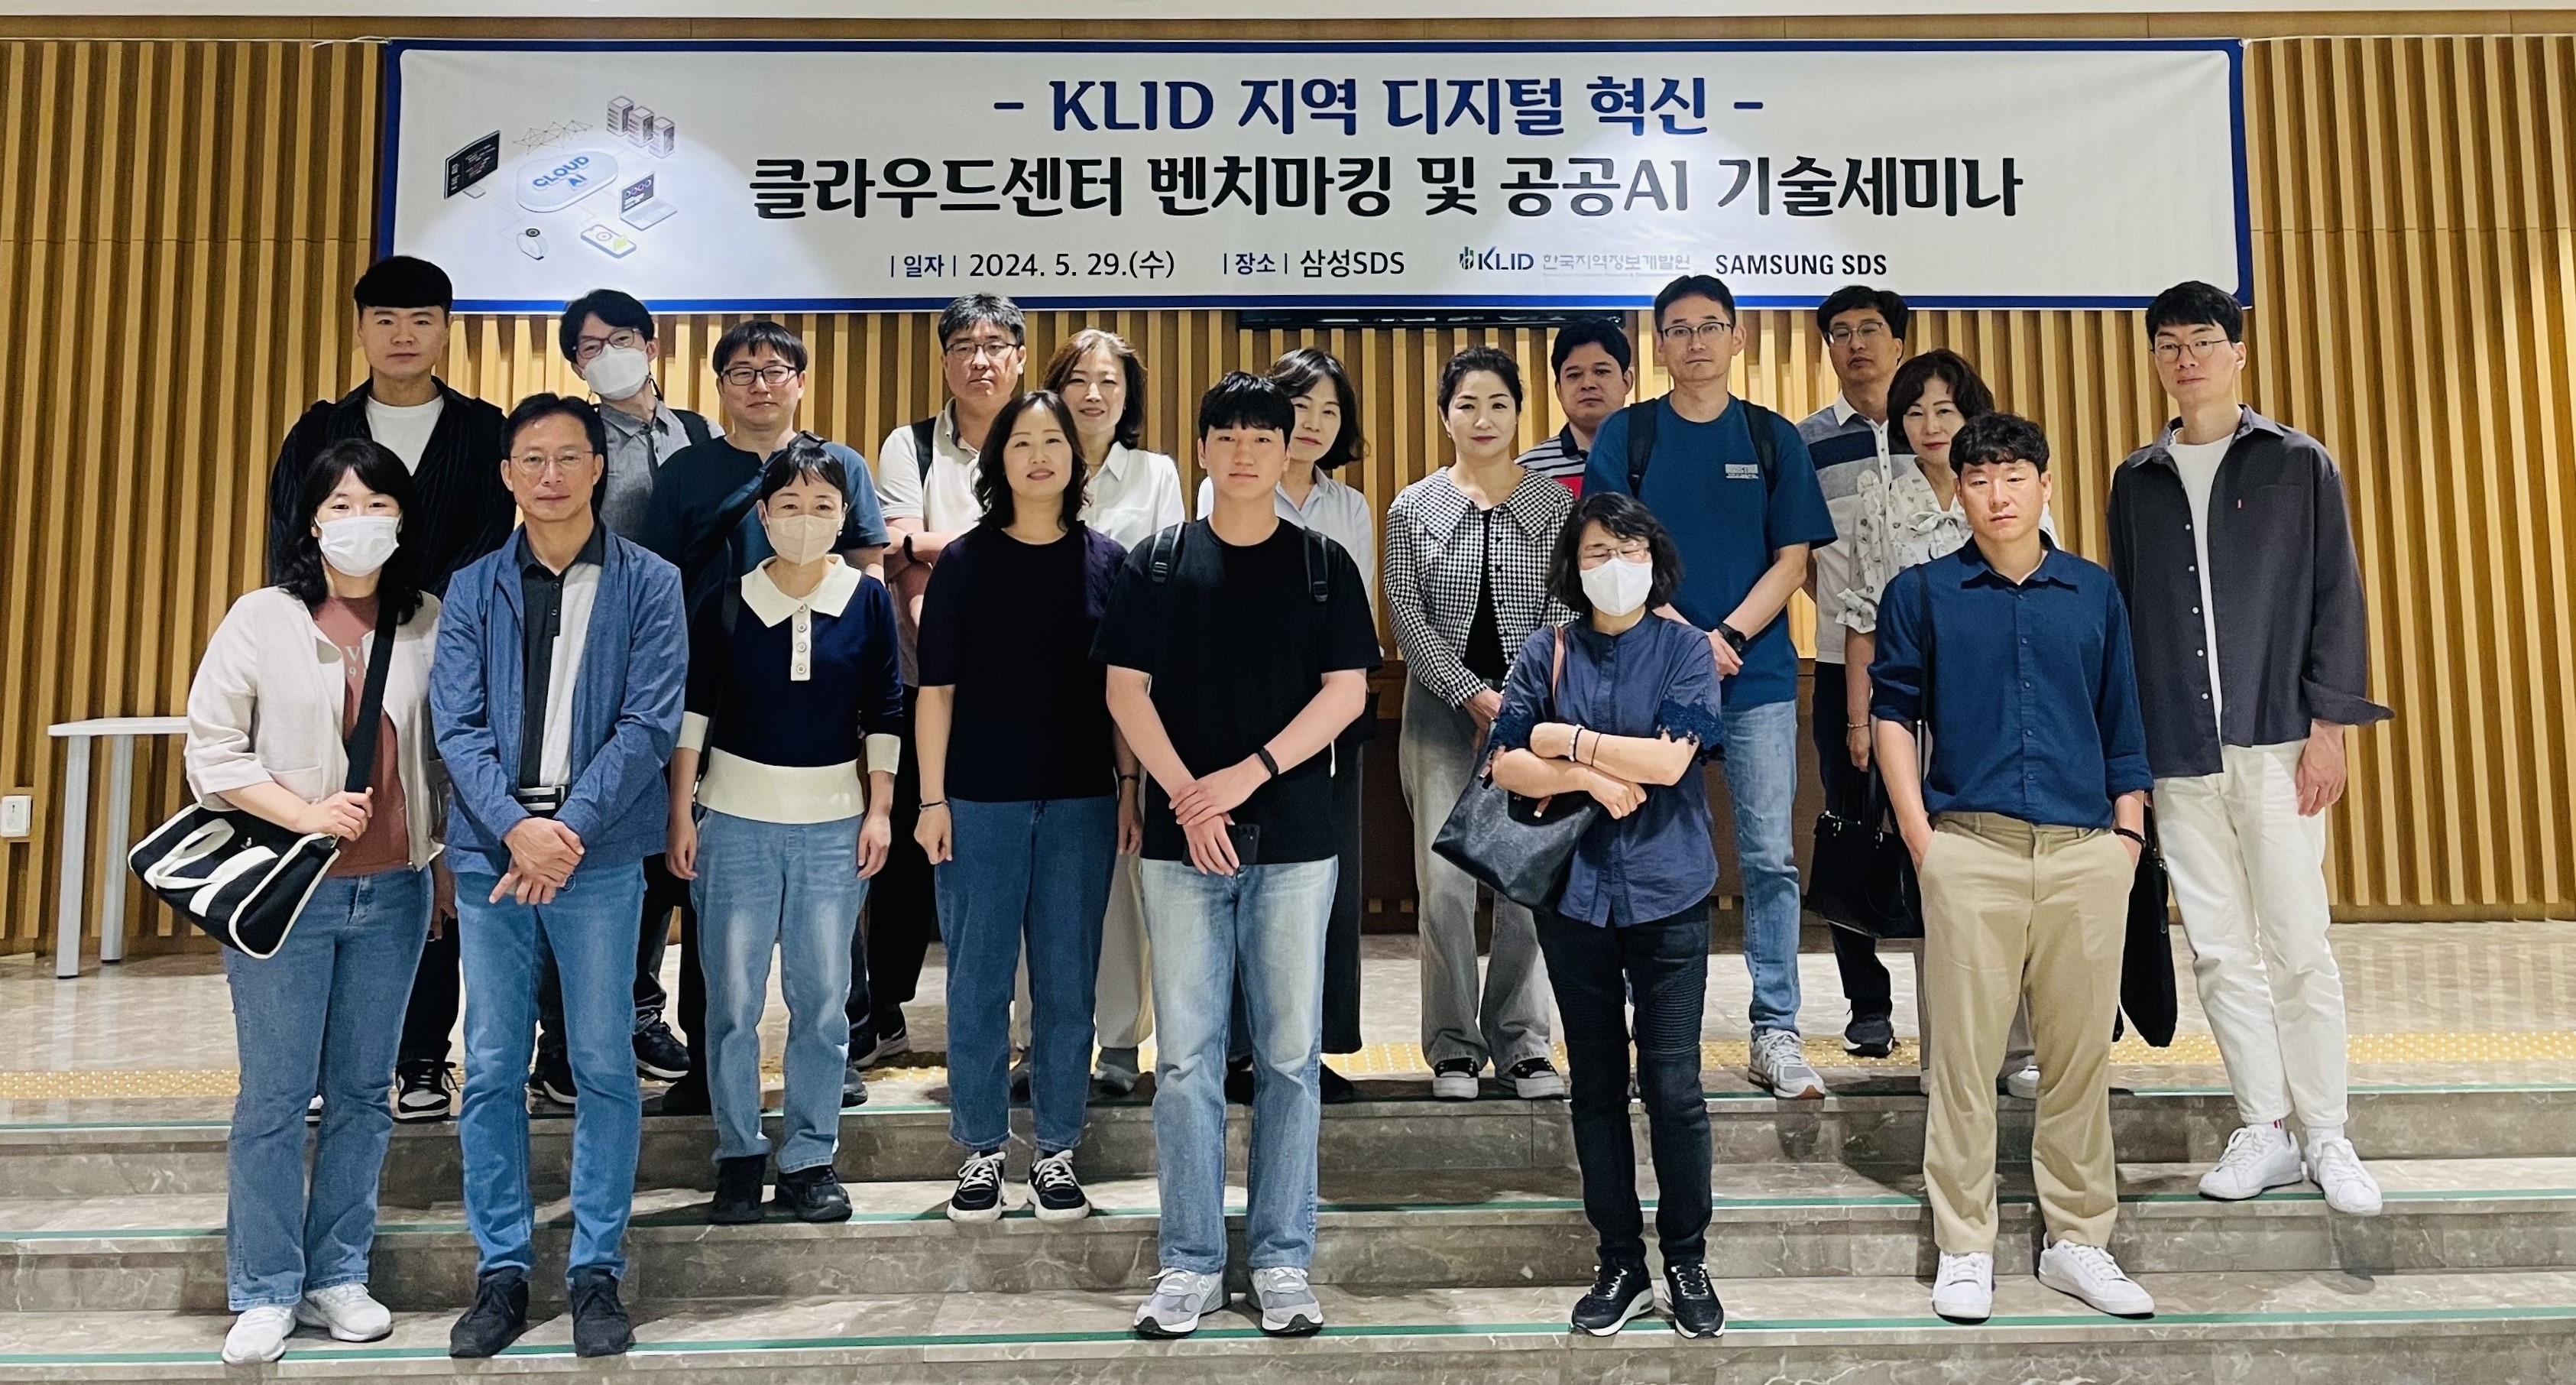 클라우드센터 투어 및 기술 세미나에 참석한 공무원들이 기념촬영을 하는 모습./사진제공=한국지역정보개발원